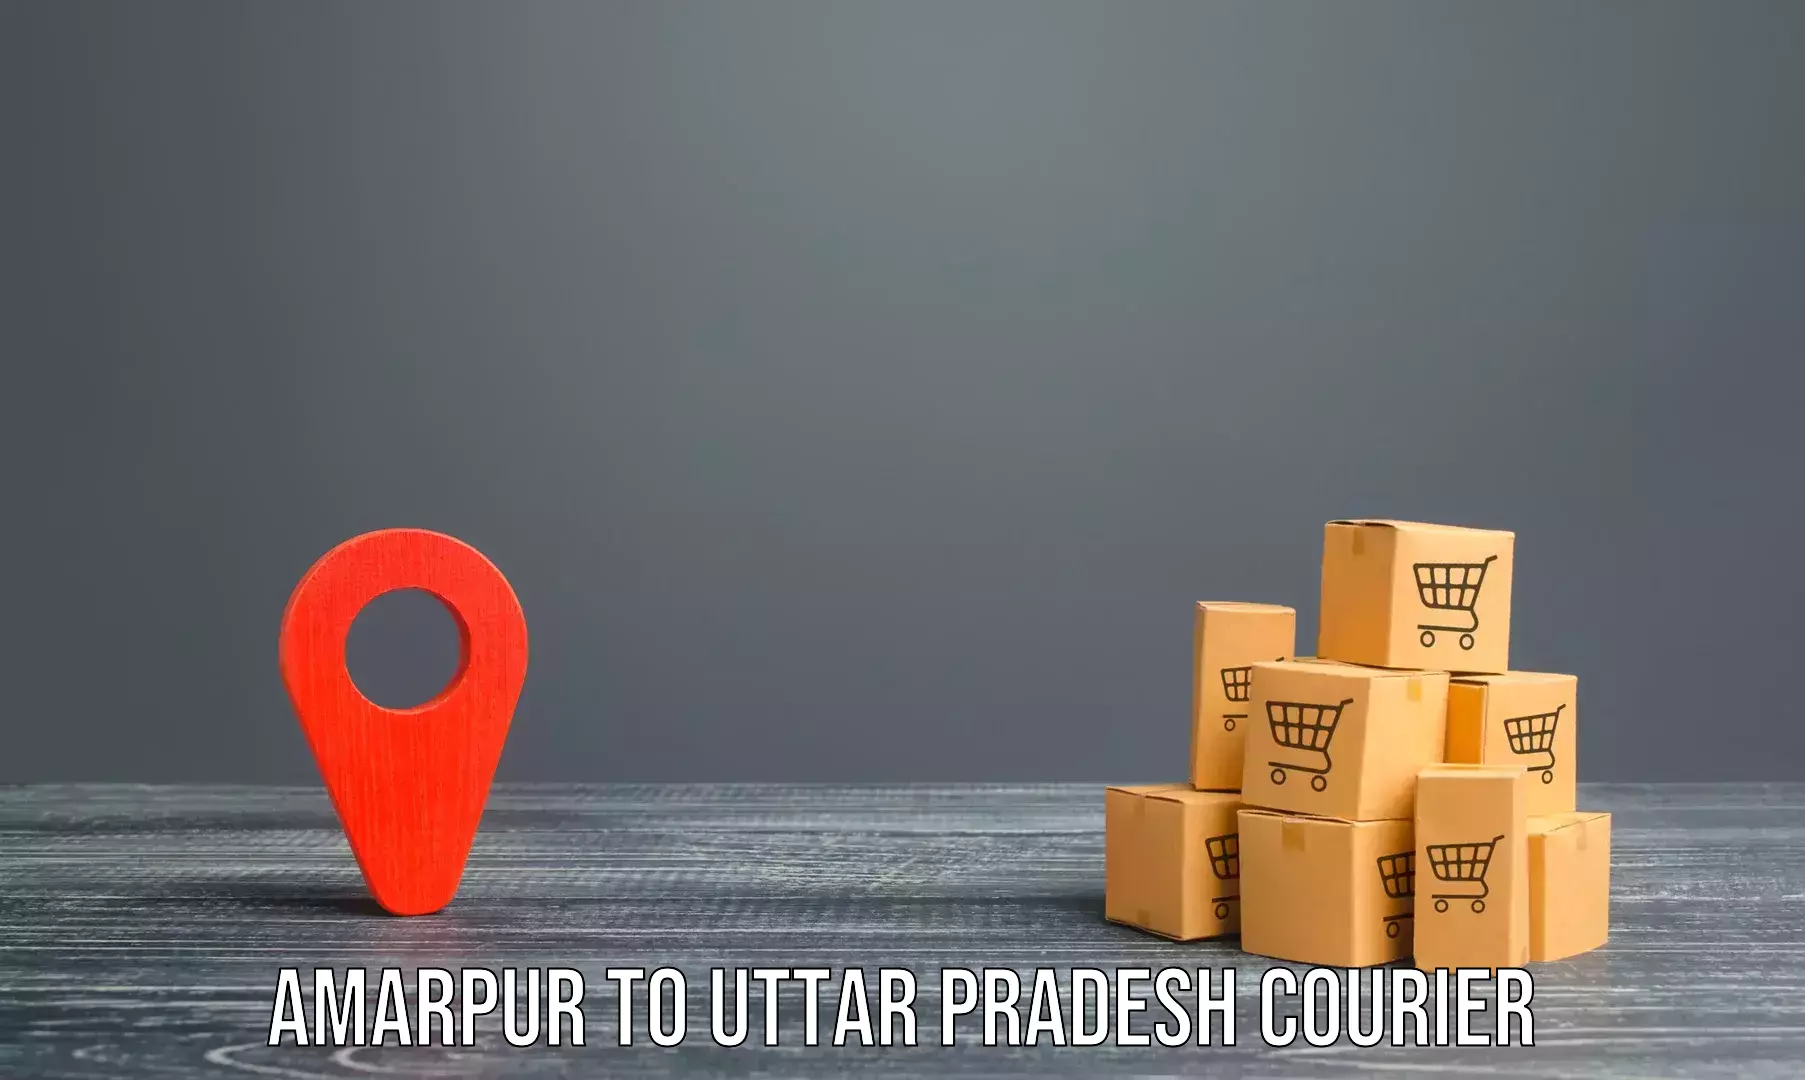 Quick furniture moving Amarpur to Varanasi